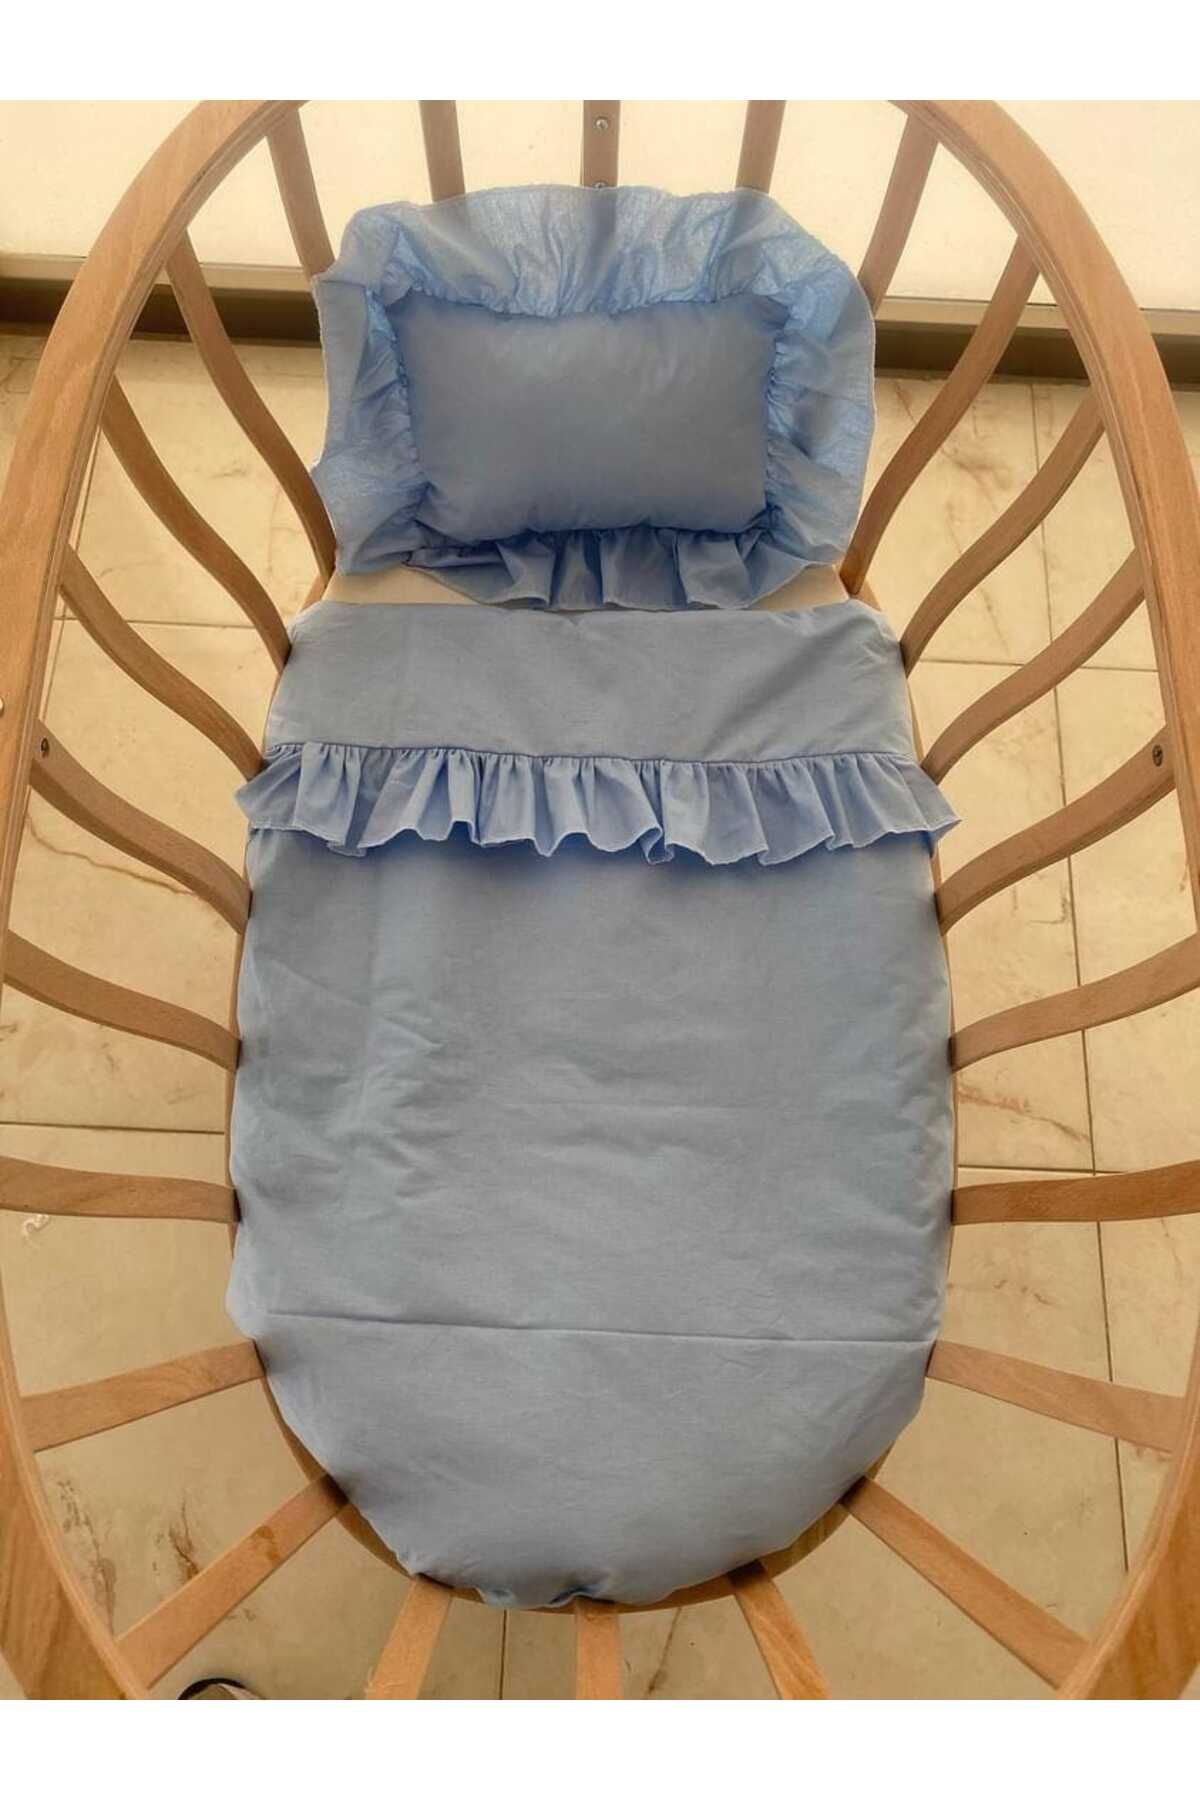 BABYSROSE Sepet Beşik Bebek Yorgan Ve Yastığı (50*80cm) Mavi